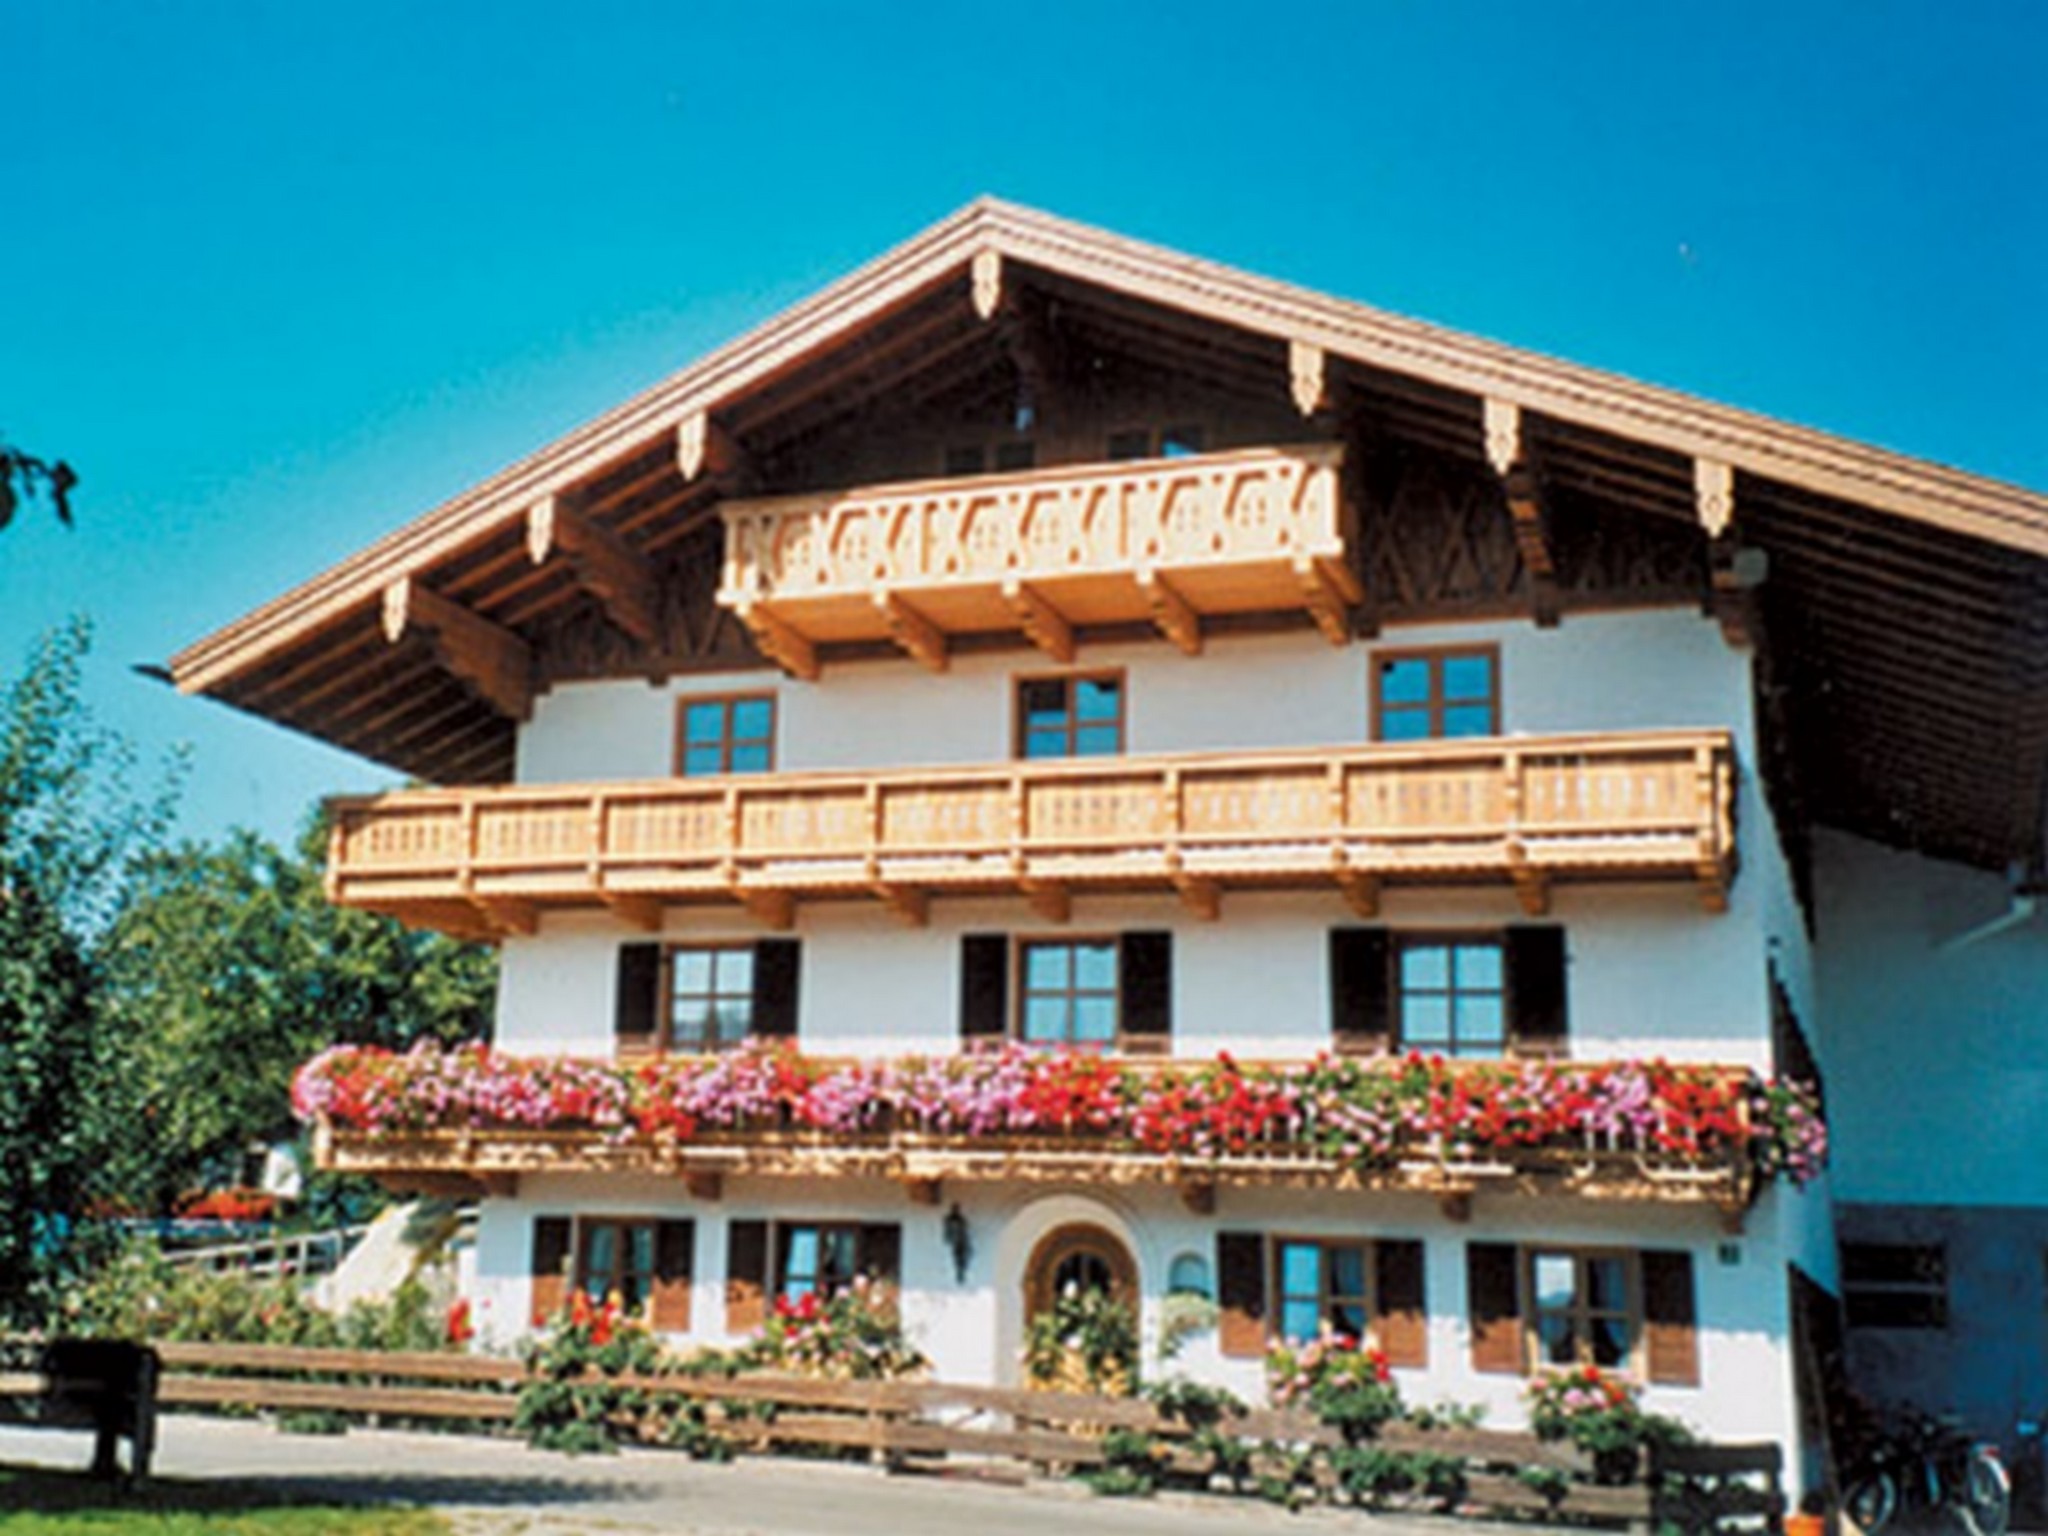 König Andrea Schwaigerhof Rottau (DE Rottau). Ferienwohnung in den Alpen